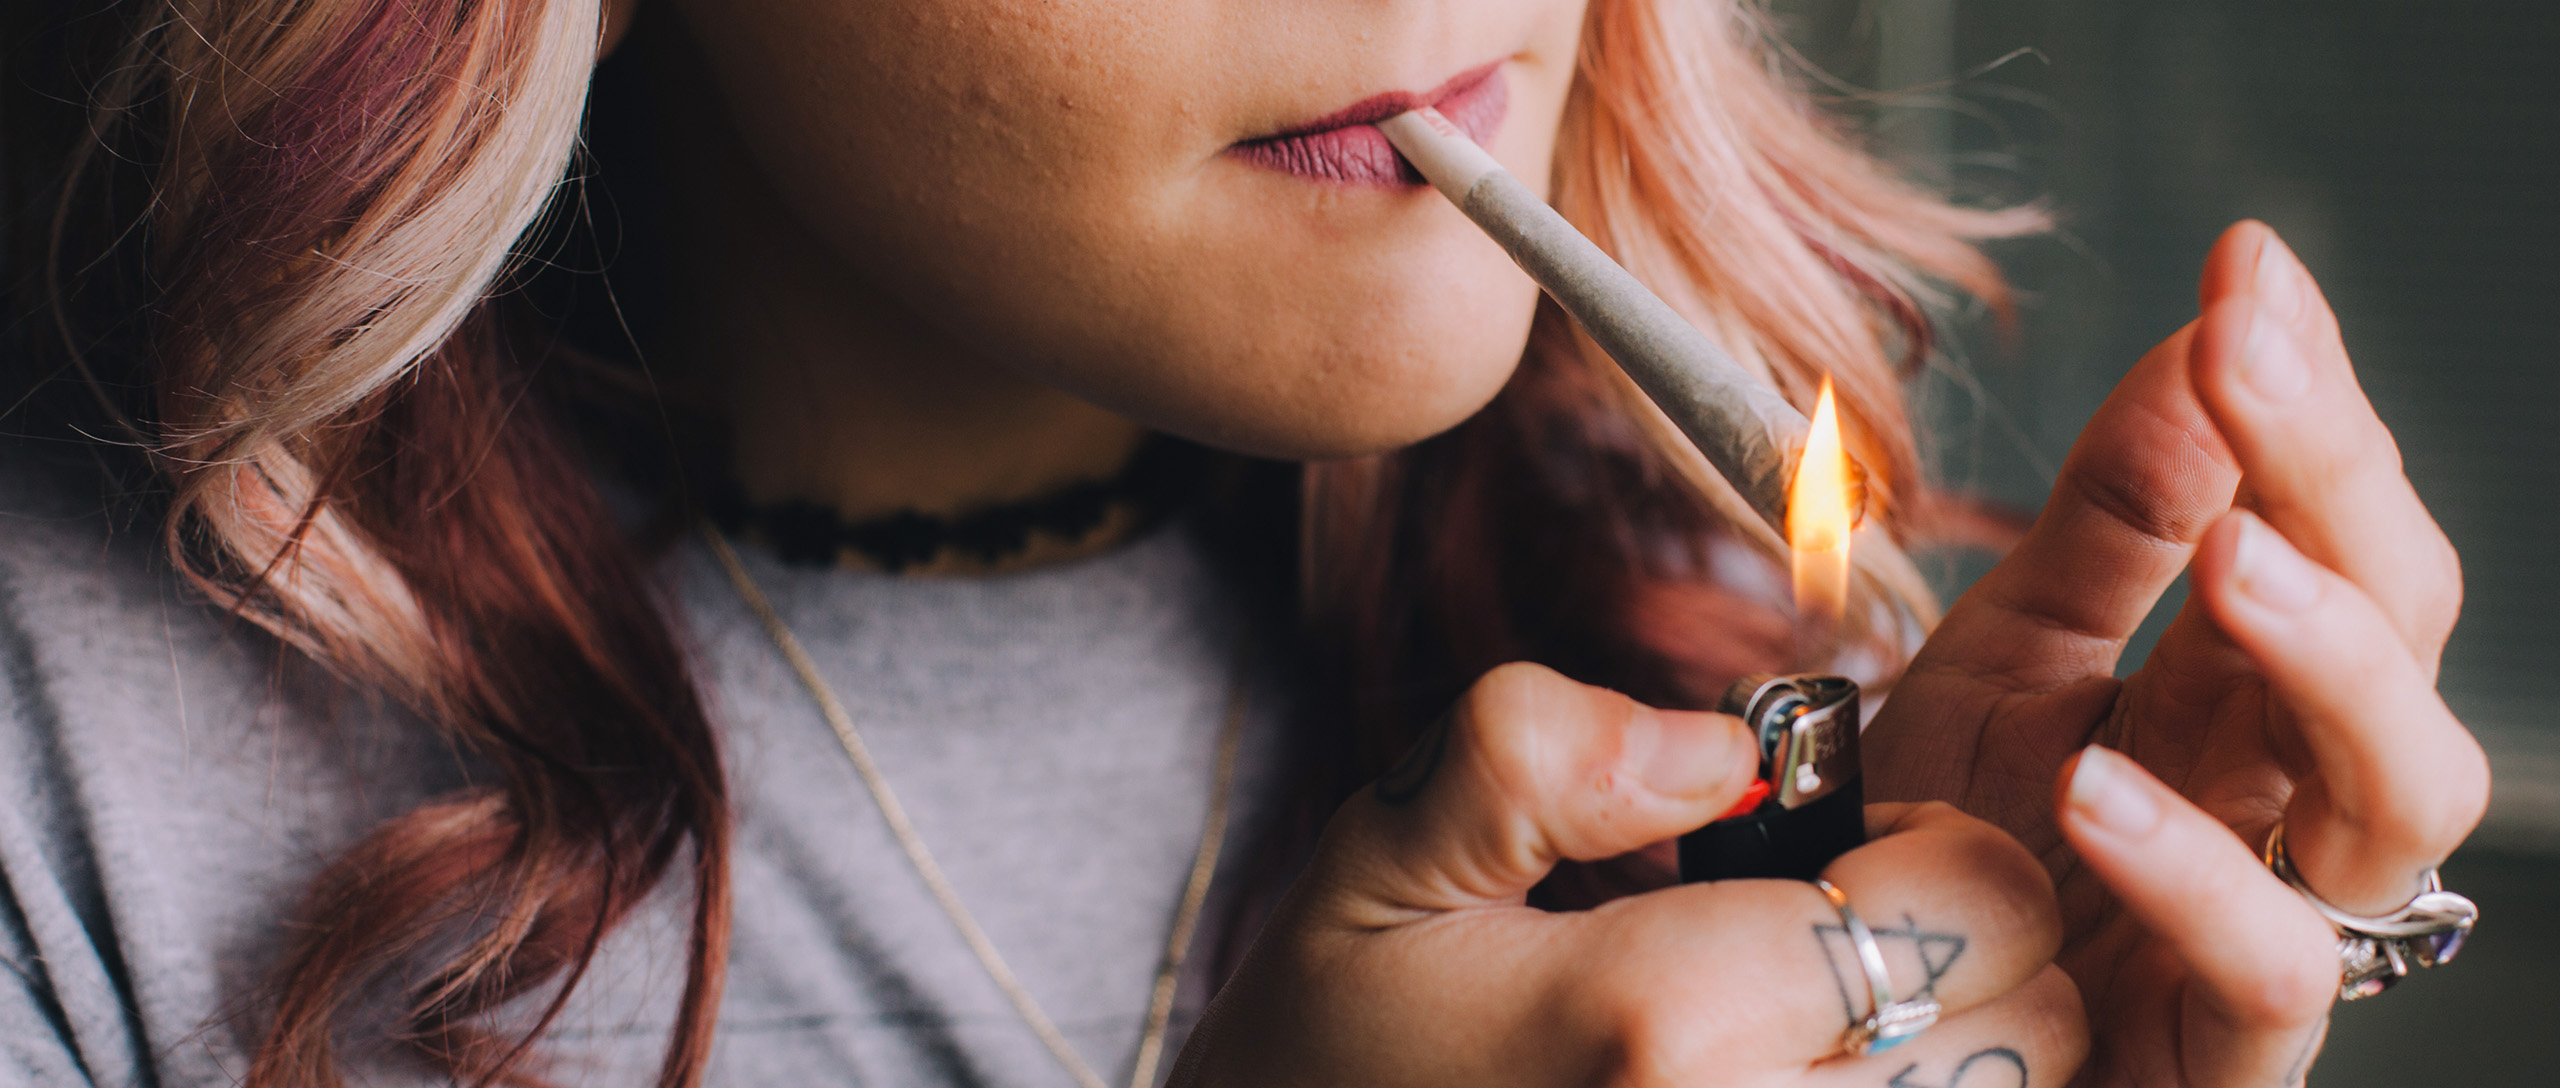 jeune fille qui fume du cannabis